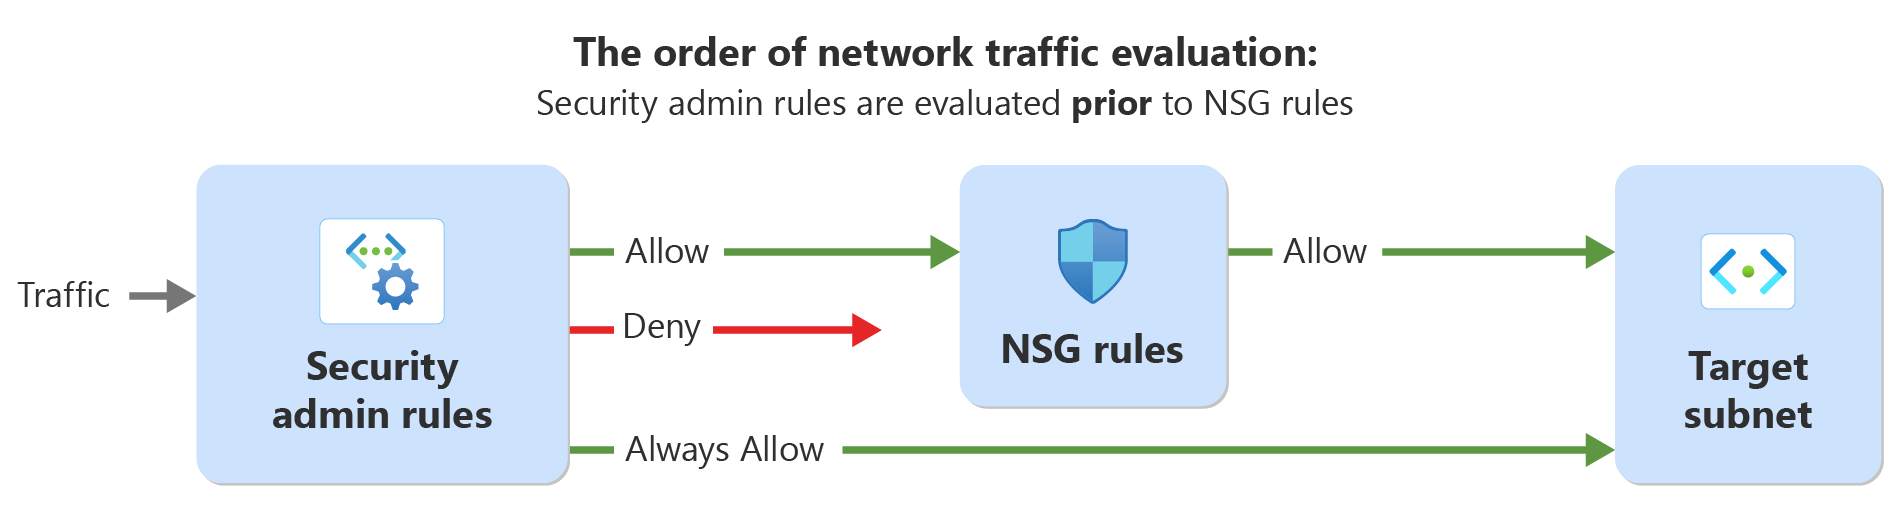 示意图显示了使用安全管理规则和网络安全规则评估网络流量的顺序。